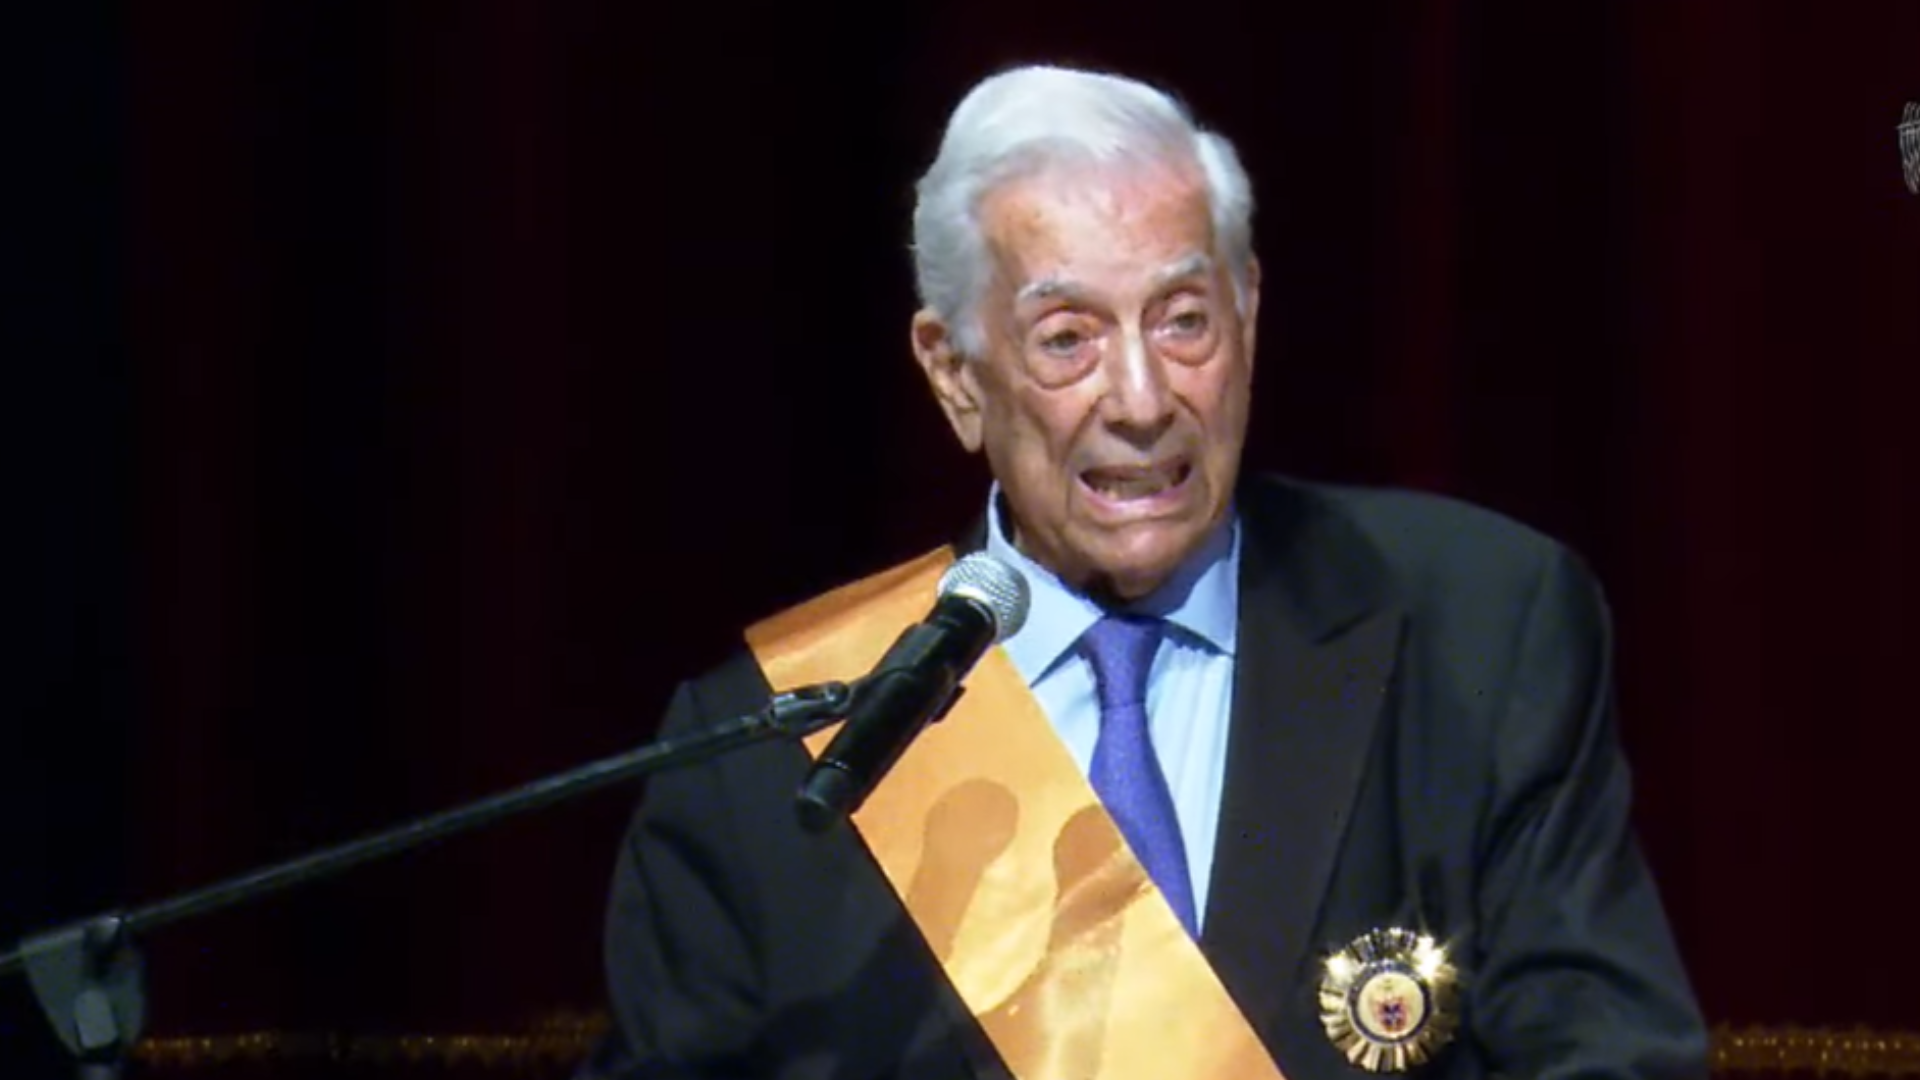 Mario Vargas Llosa cuestionó intromisiones de algunos gobiernos en el Teatro Municipal de Lima.
Foto: MML